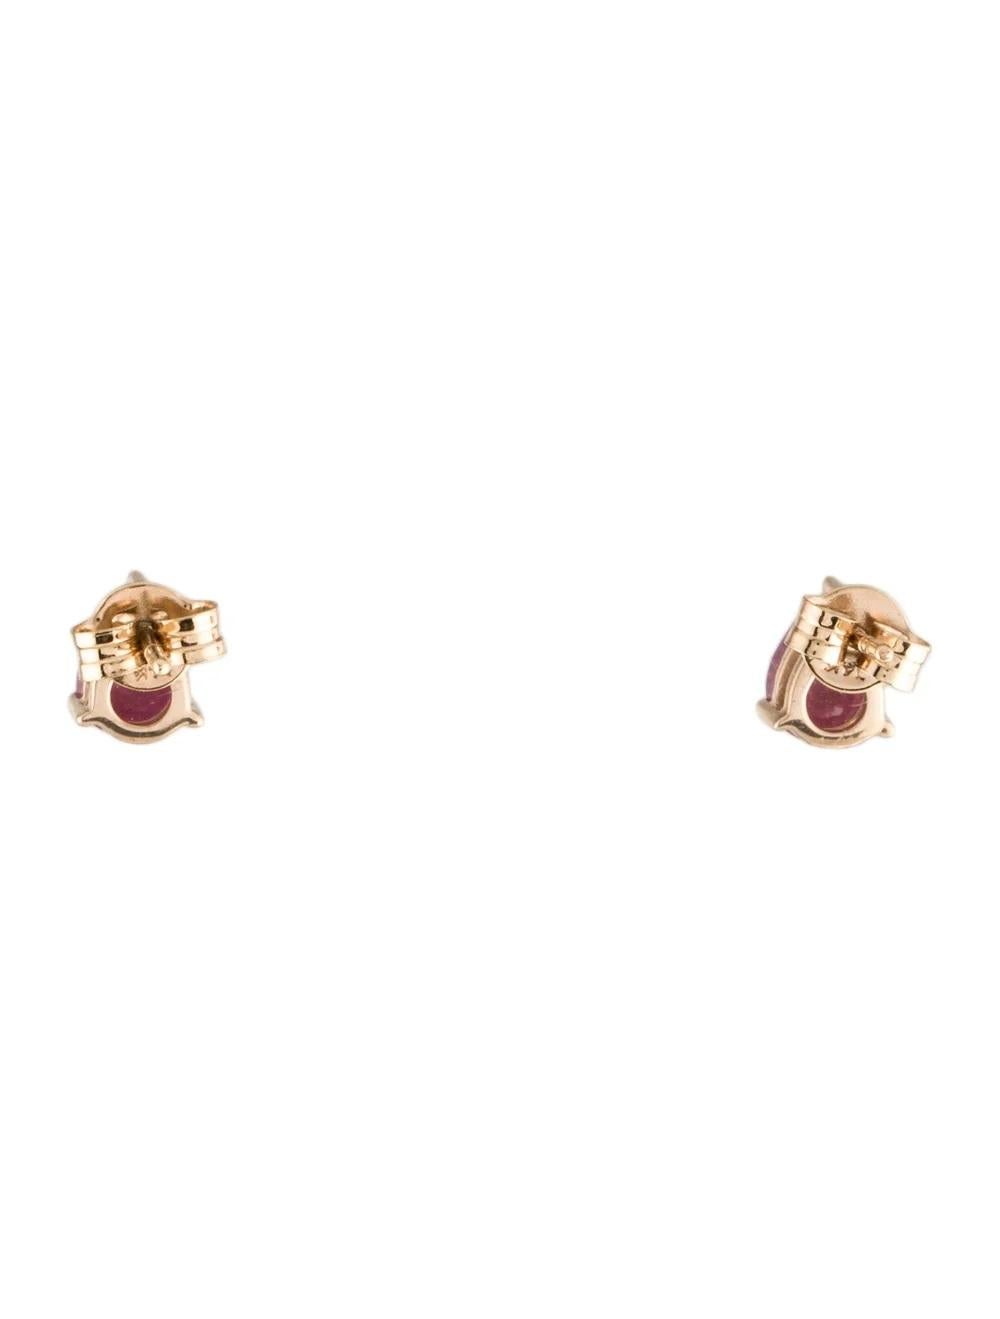 Pear Cut 14K Ruby Stud Earrings 1.42ctw Pear Gold Red Gemstone - Luxury Jewelry For Sale